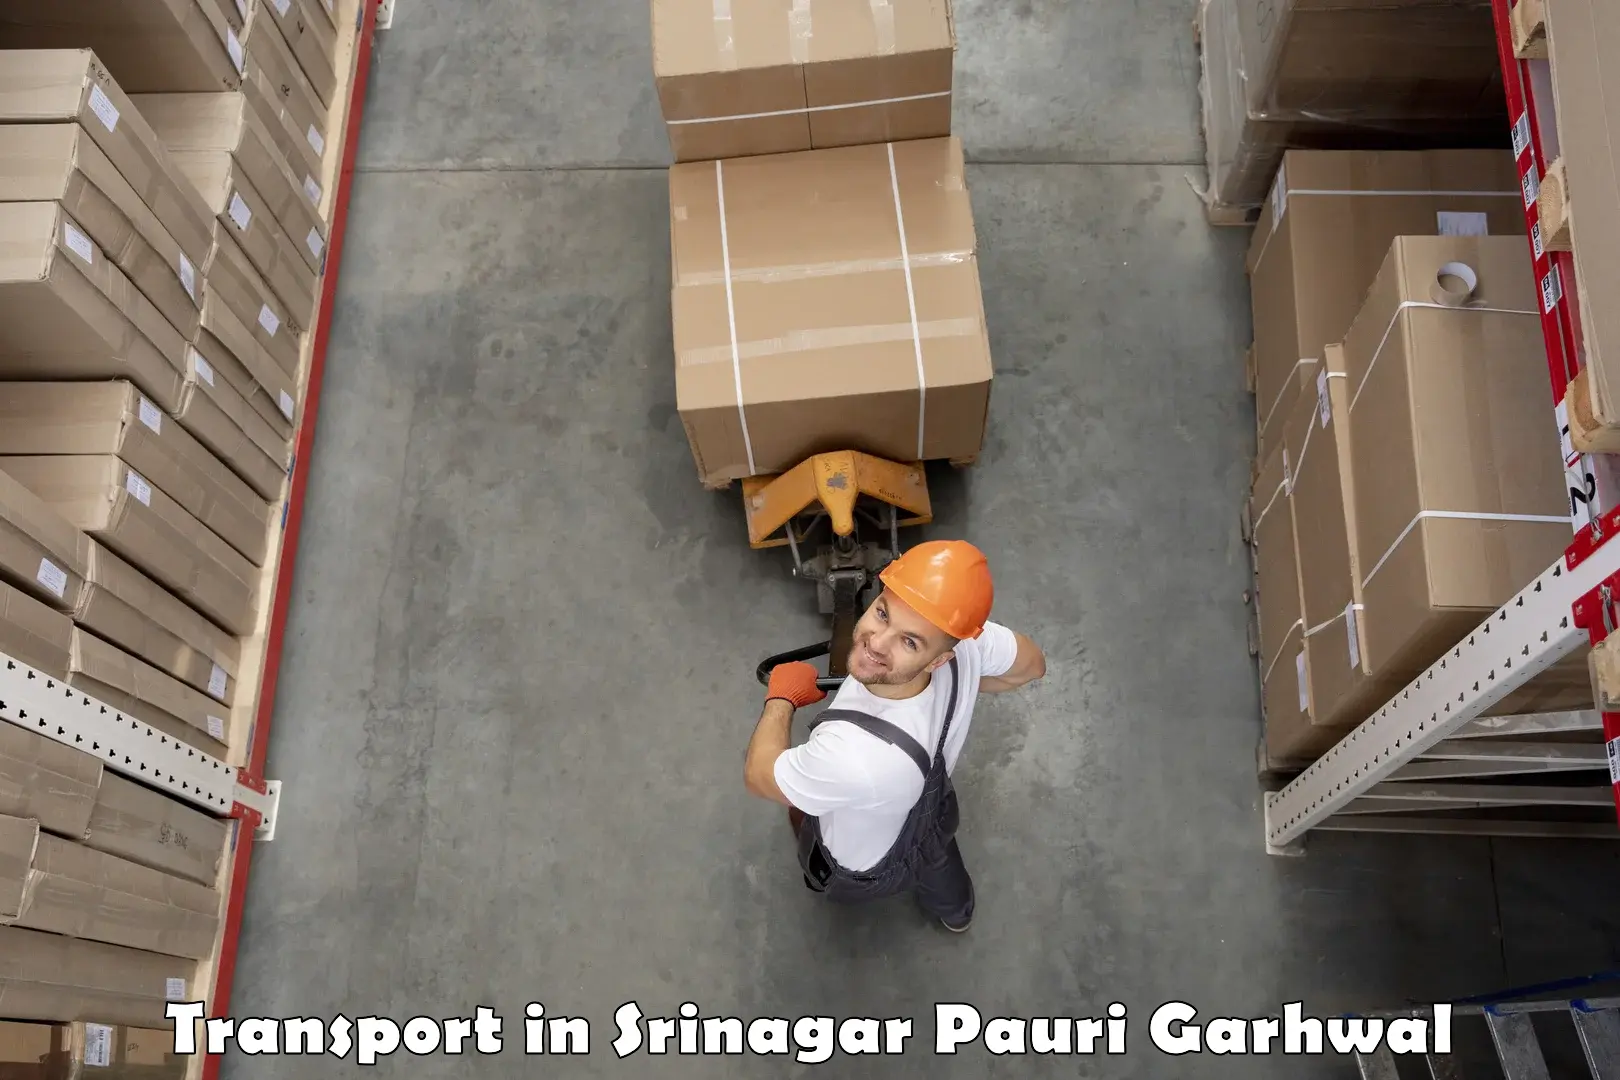 Shipping services in Srinagar Pauri Garhwal